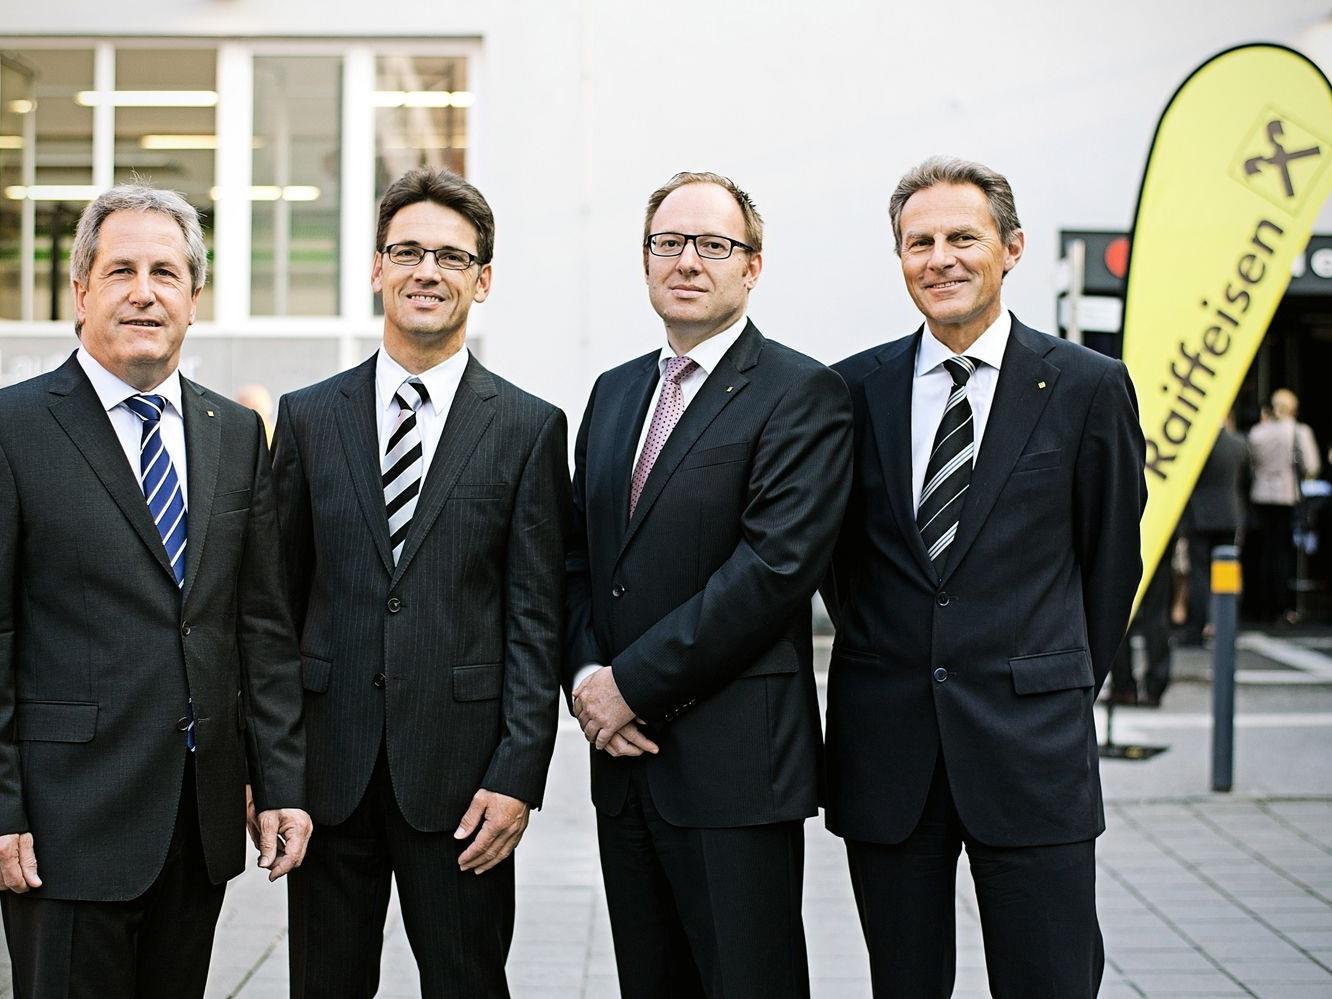 Aufsichtsratsvorsitzender Anton Rein mit den Vorstandsdirektoren Dr. Wilfried Amann, Dr. Gernot Erne und Dr. Wolfgang Zumtobel.